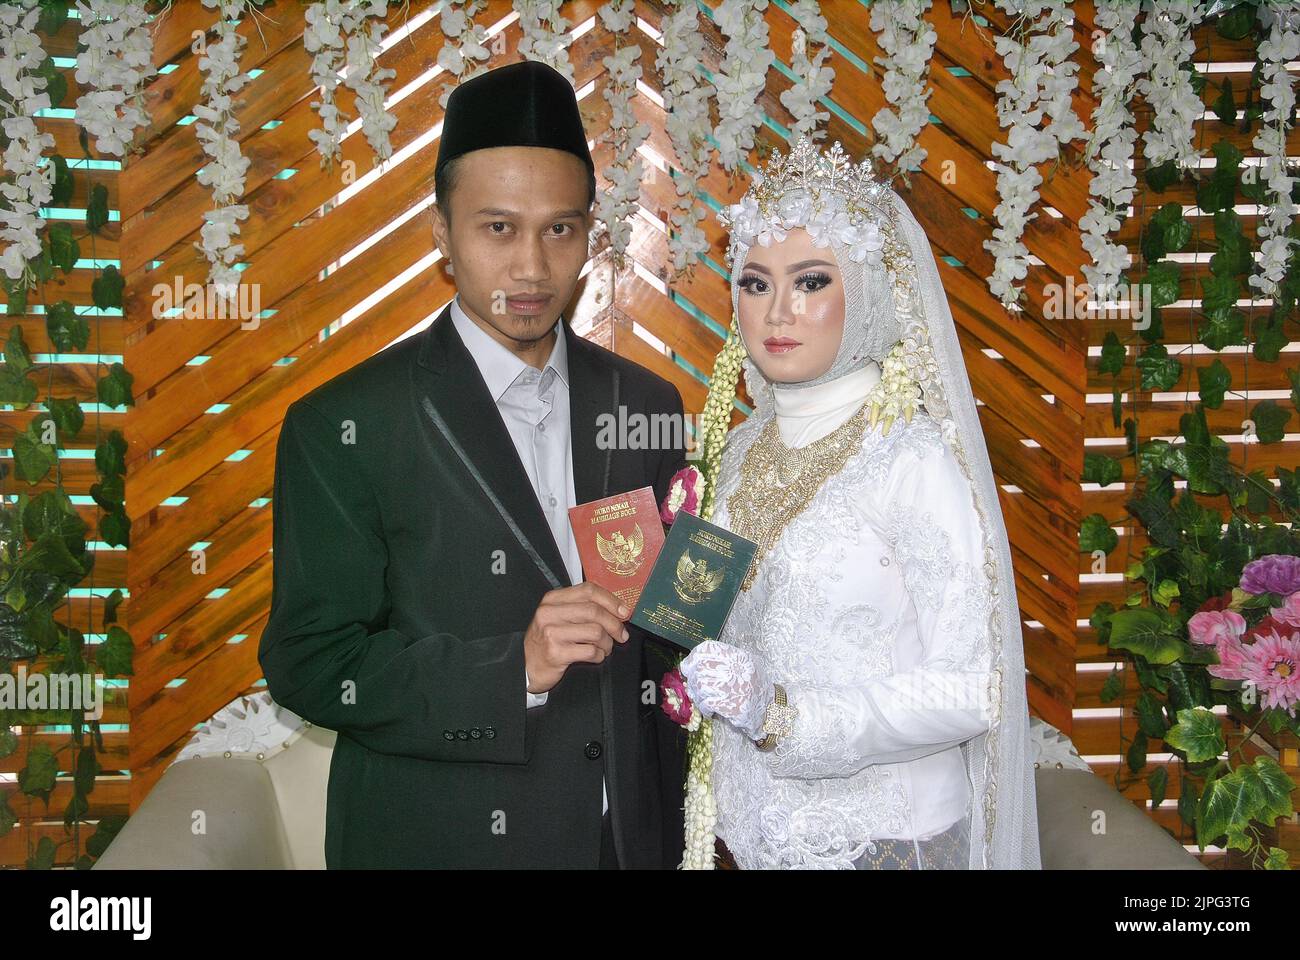 Tegal, INDONESIEN - 22. Dezember 2019: Die muslimische Braut und der muslimische Bräutigam zeigen das Ehebuch. Stockfoto